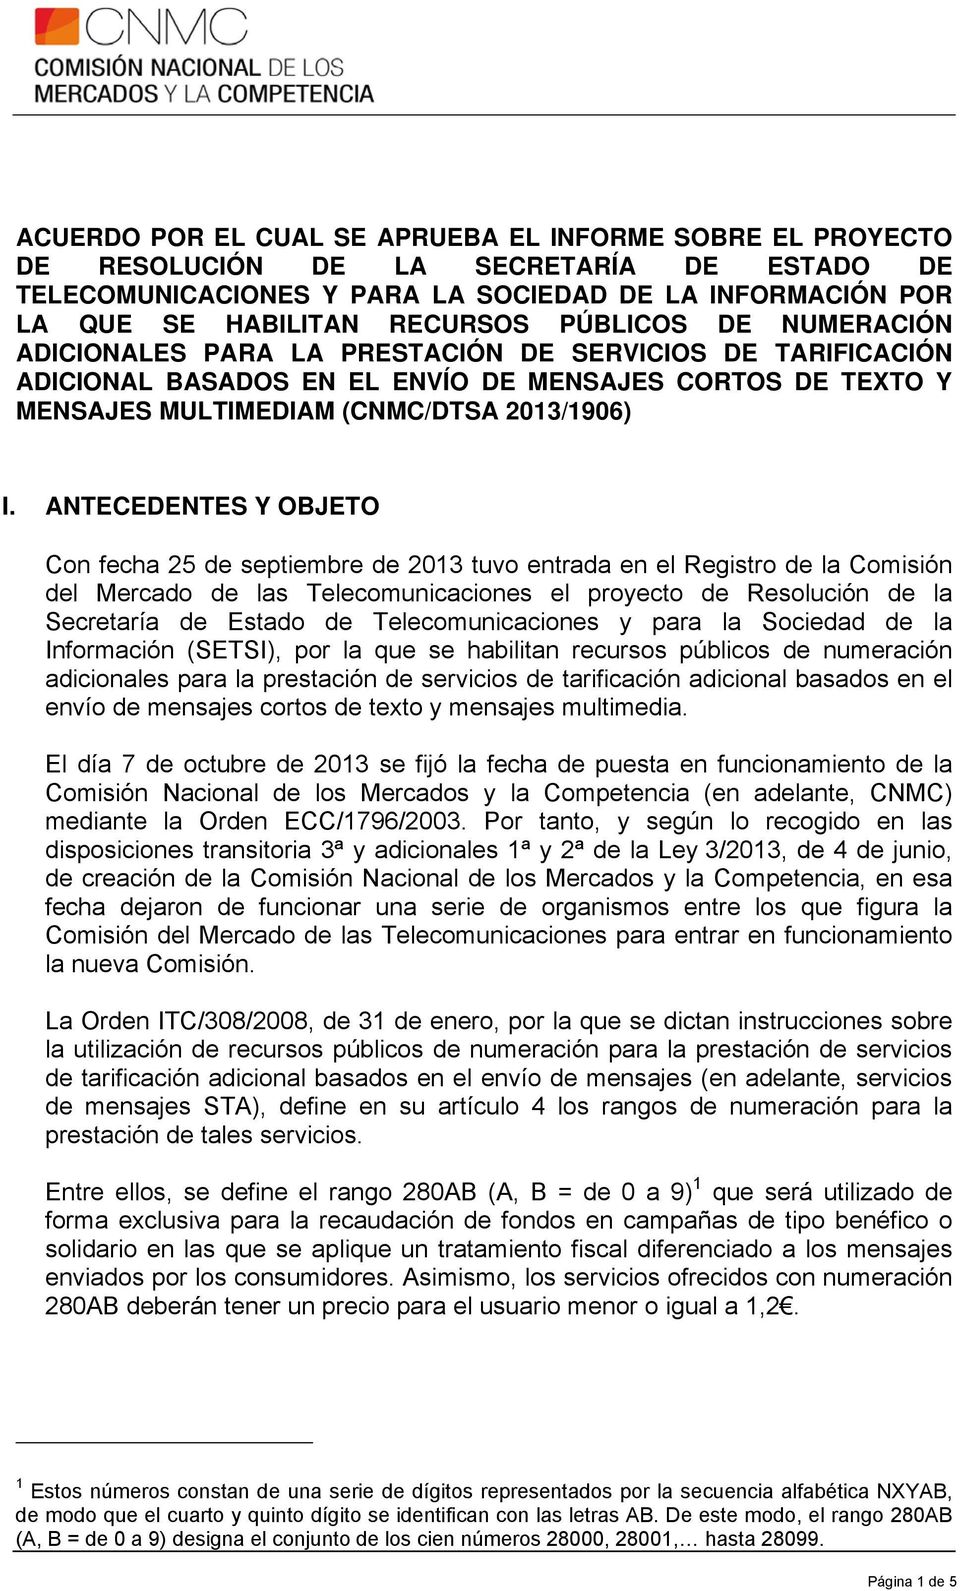 ANTECEDENTES Y OBJETO Con fecha 25 de septiembre de 2013 tuvo entrada en el Registro de la Comisión del Mercado de las Telecomunicaciones el proyecto de Resolución de la Secretaría de Estado de